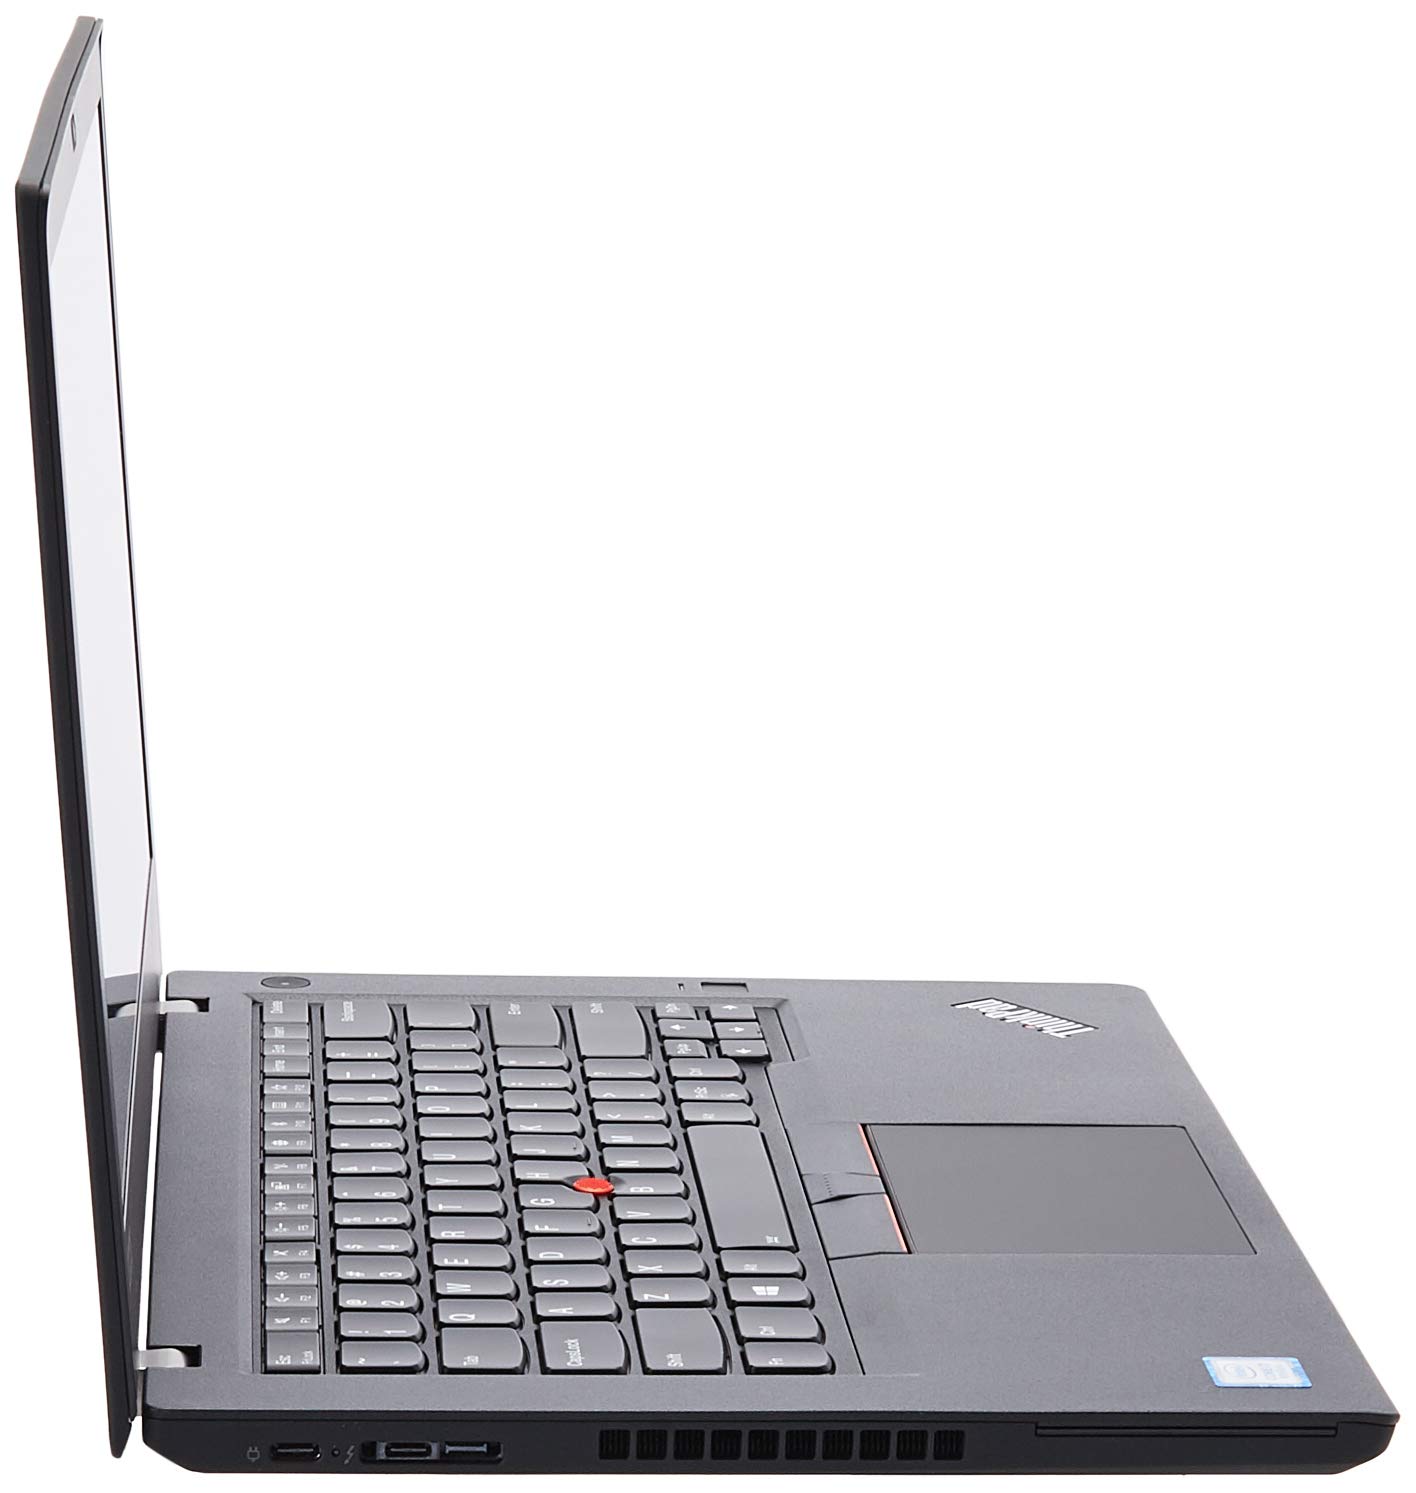 Lenovo 20L5000UUS Thinkpad T480 20L5 14" Notebook - Windows - Intel Core i7 1.8 GHz - 8 GB RAM - 256 GB SSD, Black